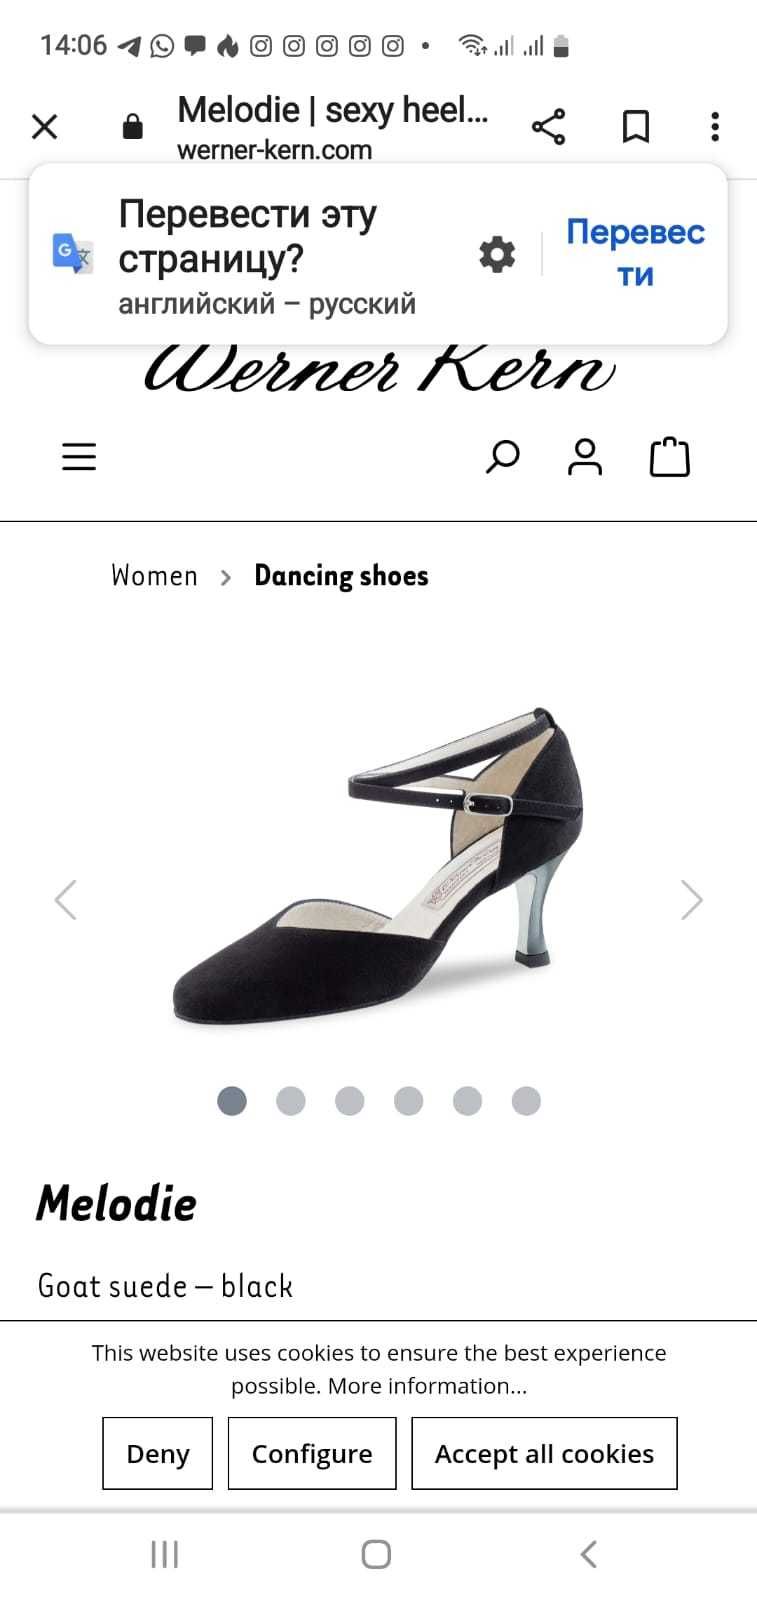 Обувь для танцев.  Werner Kern 40 размер